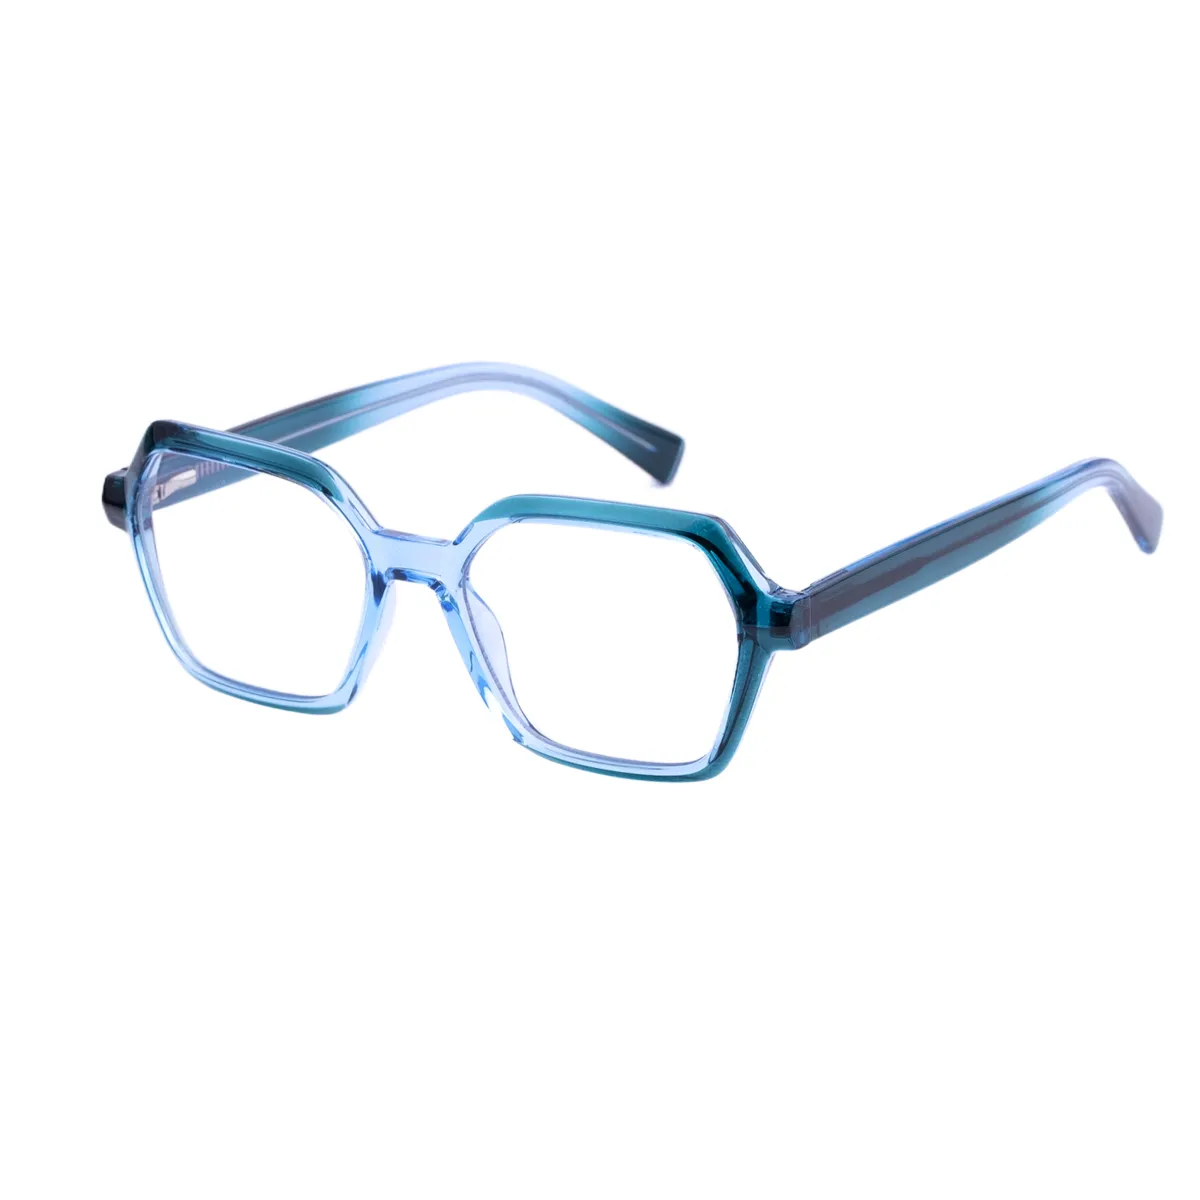 Riva - Geometric Green Glasses for Men & Women